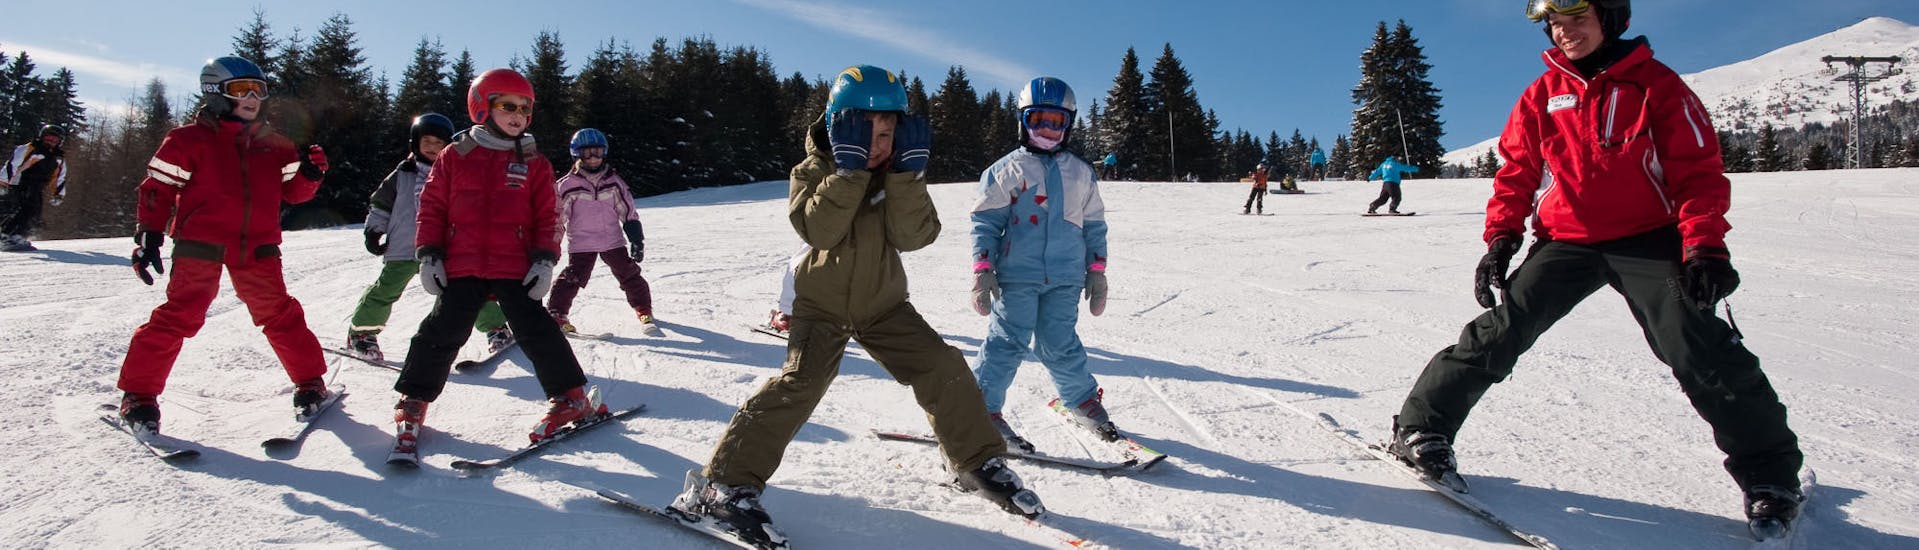 Kinder fahren im Schneepflug ab während des Kinder-Skikurs für Anfänger - Wochenende mit Skischule Nova.